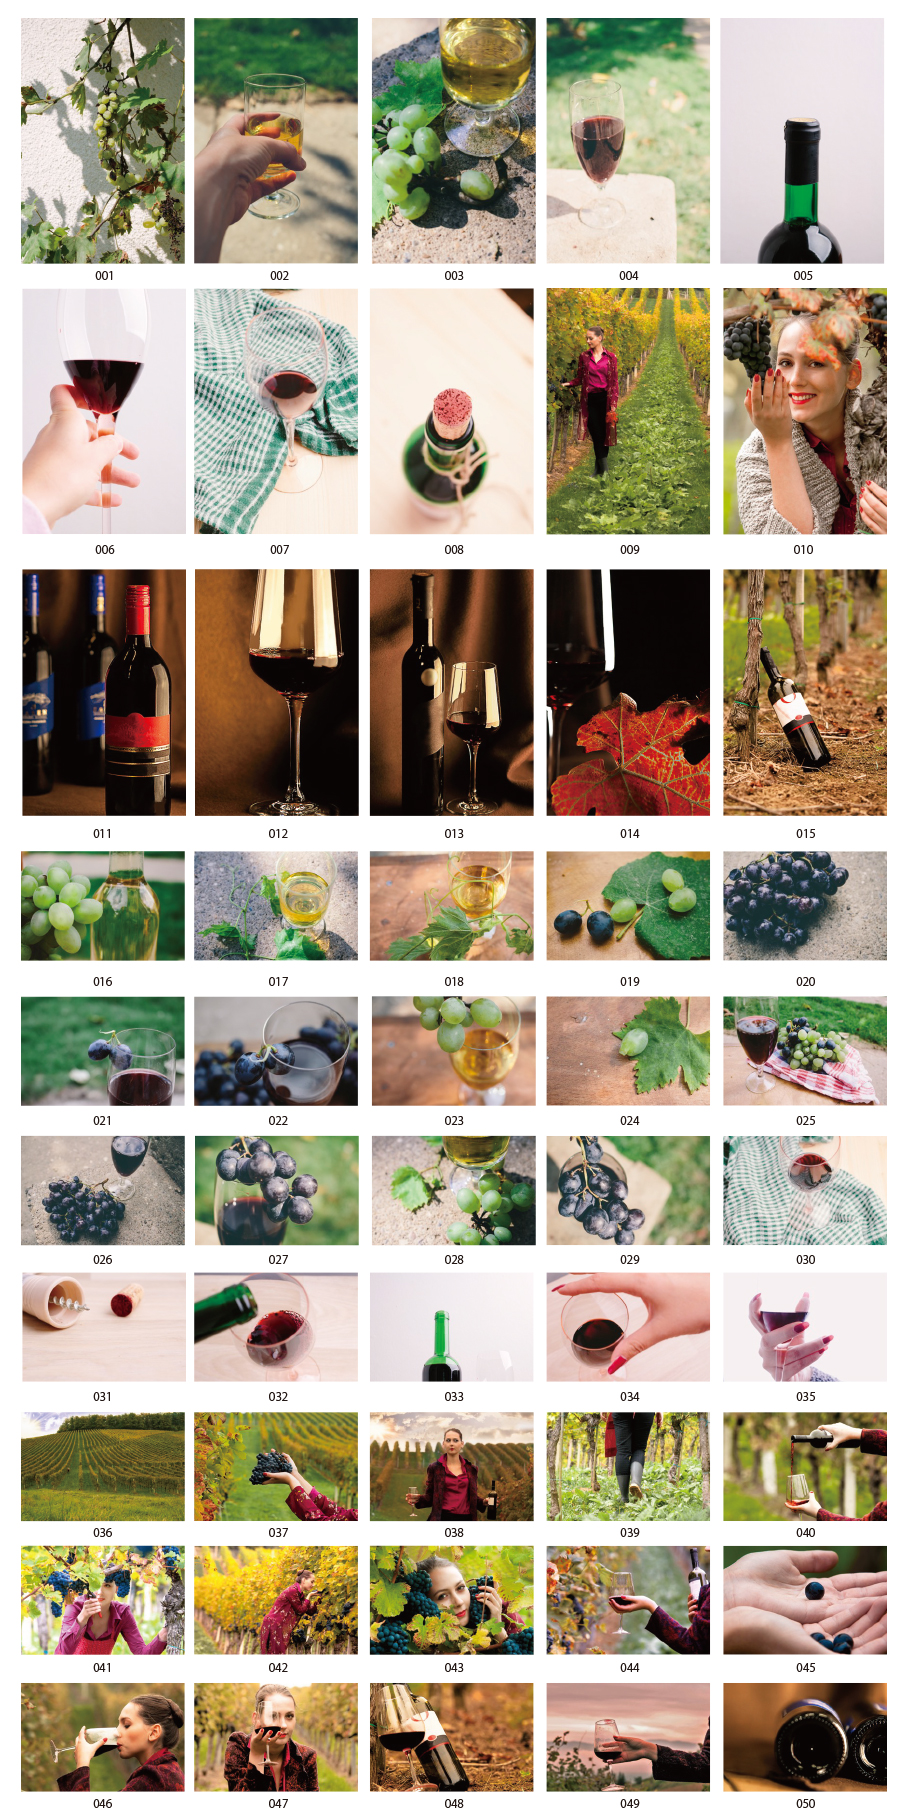 葡萄酒圖像照片材料